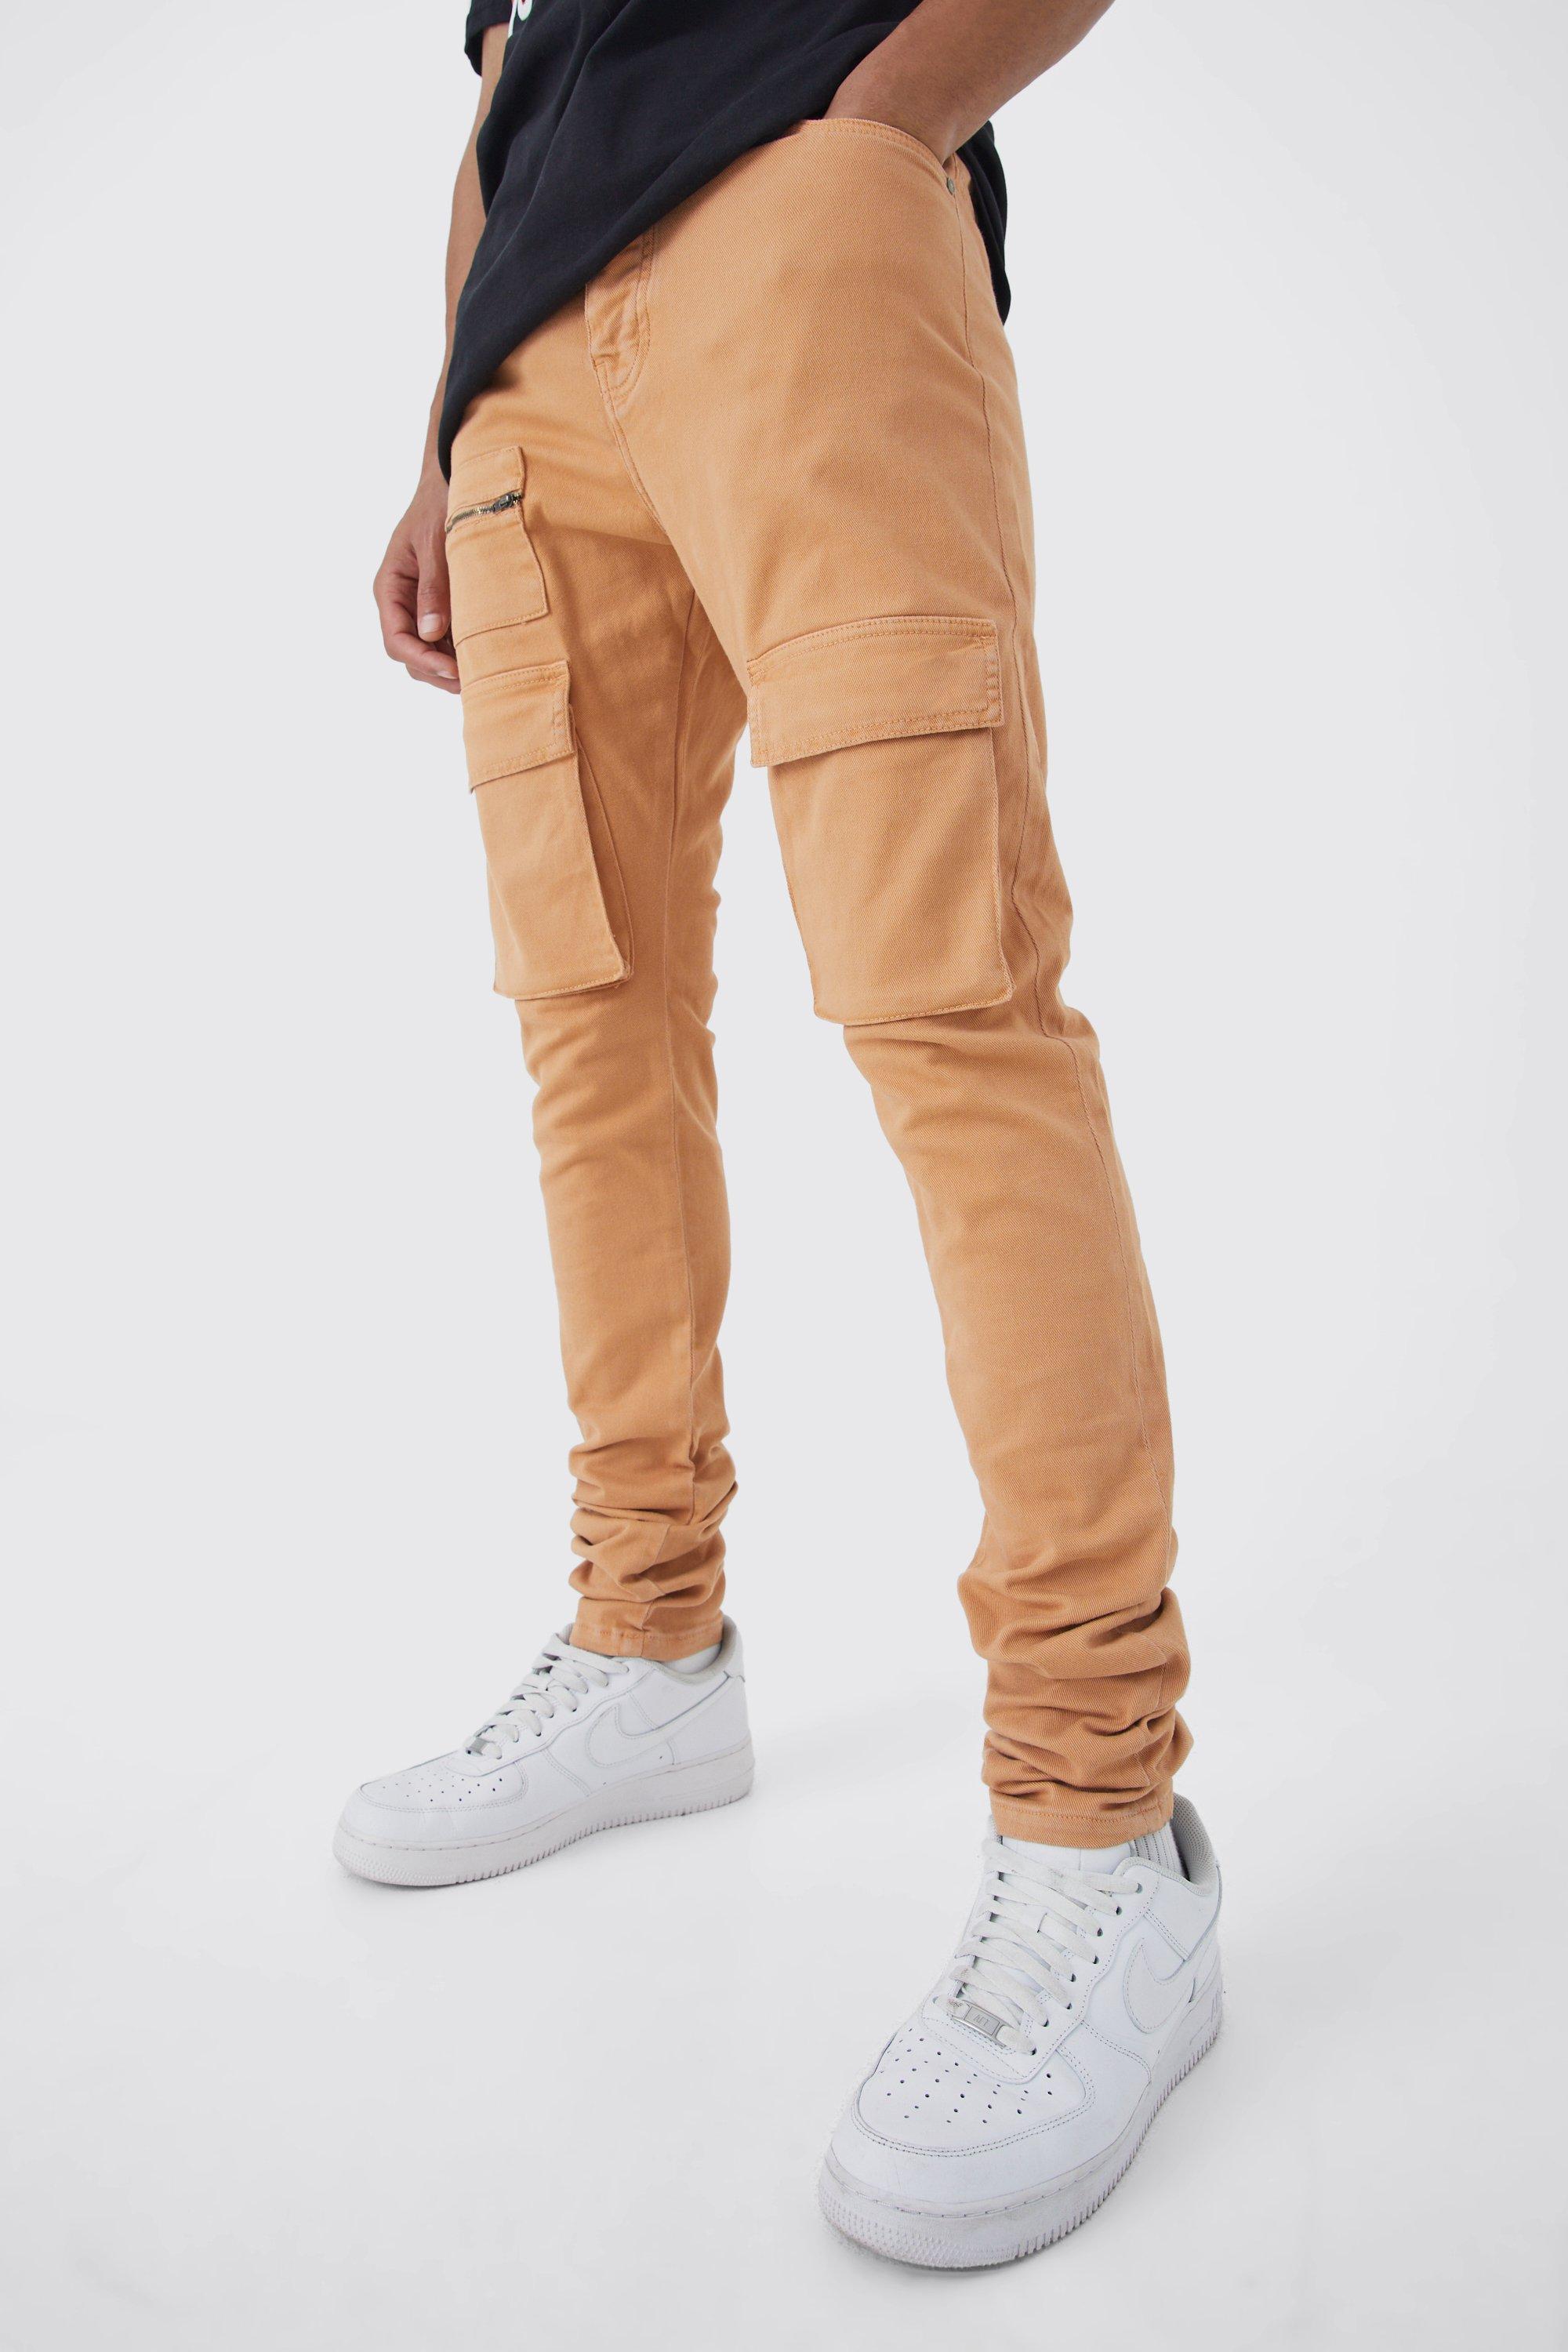 Image of Pantaloni Cargo Tall Skinny Fit con vita fissa, pieghe sul fondo e zip, Arancio